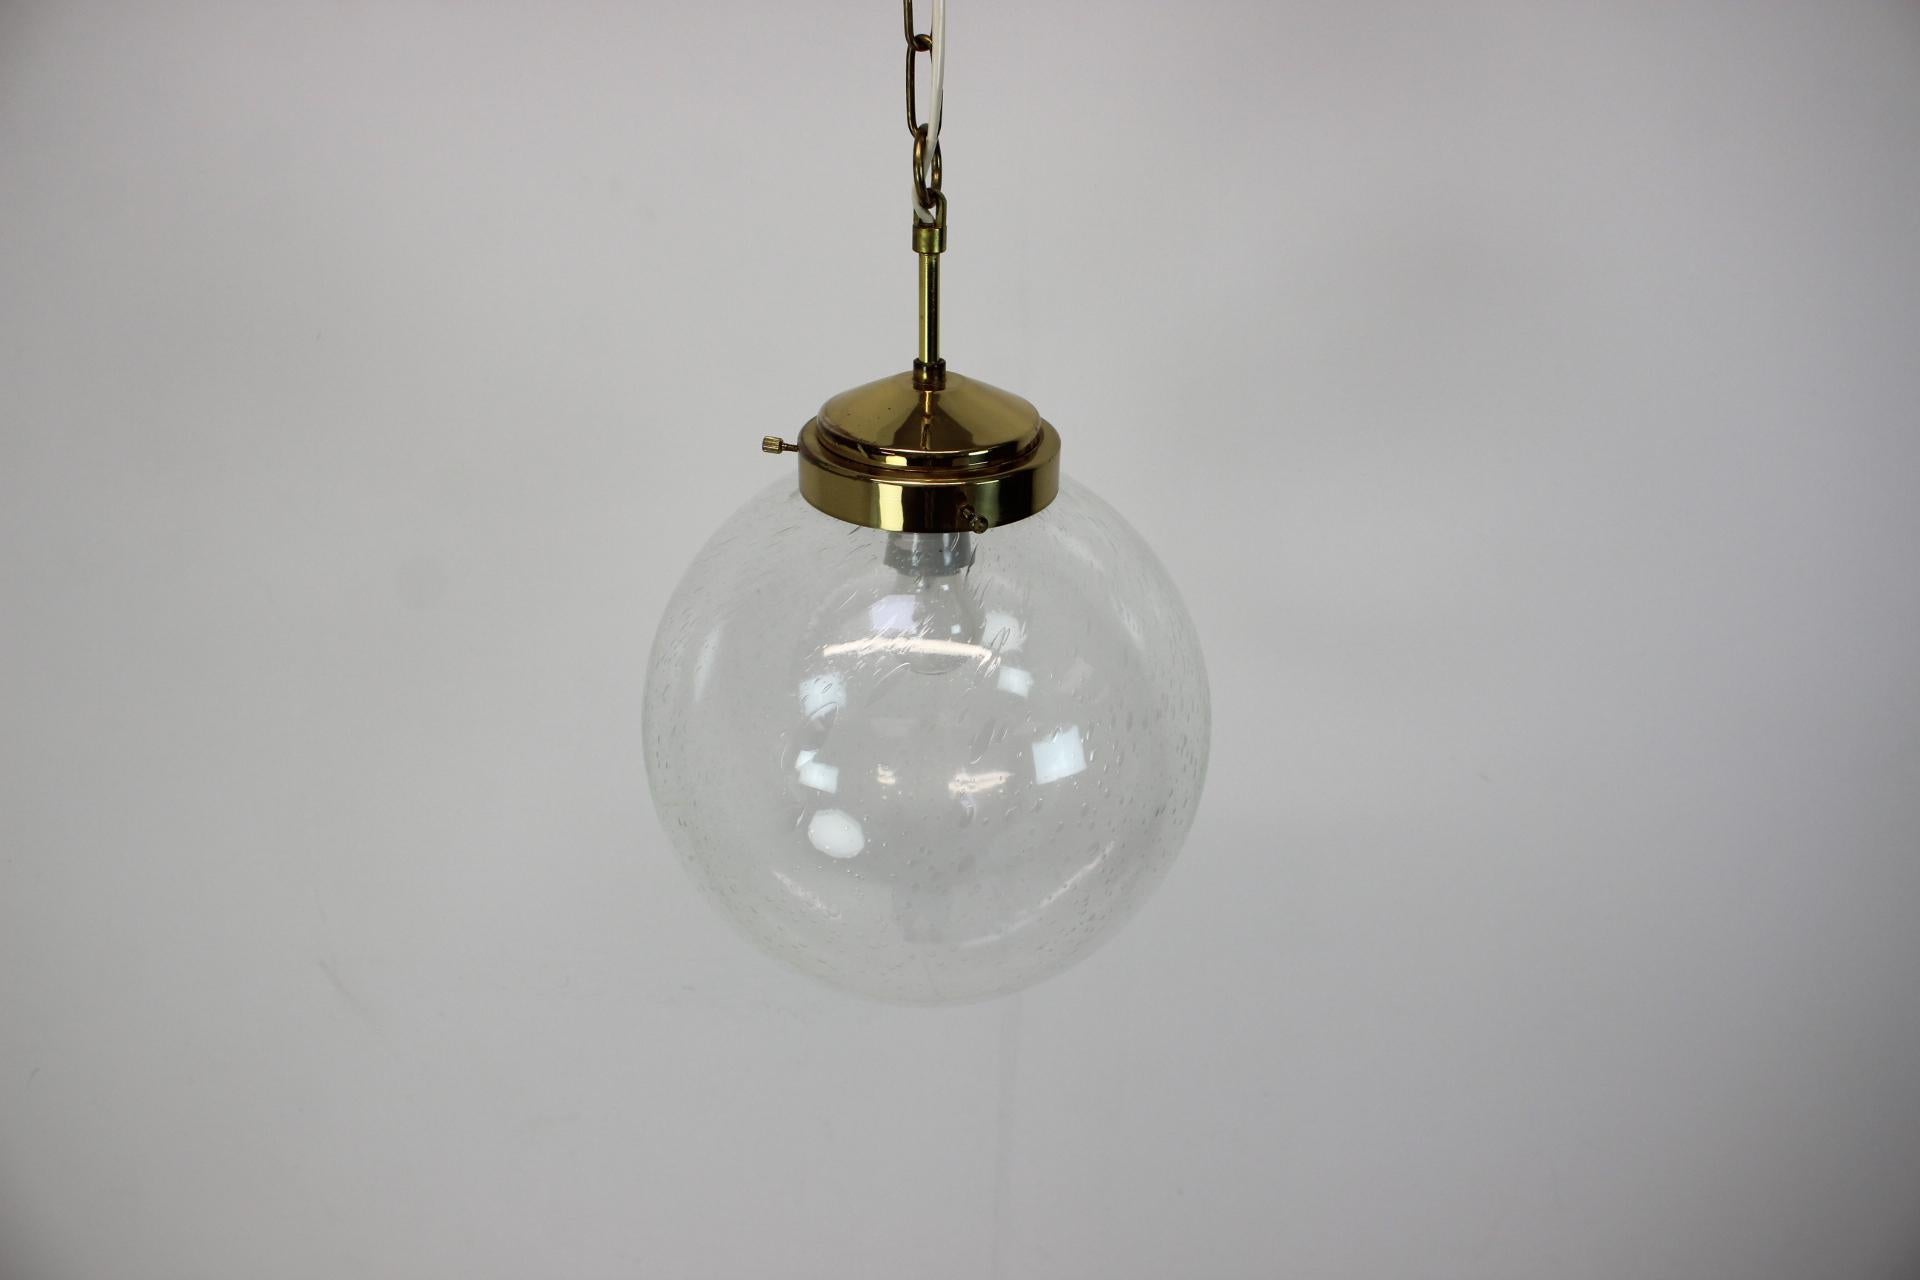 Hergestellt in der Tschechoslowakei
Hergestellt aus Glas, Messing
1xE27 oder E26 Glühbirne
Guter Originalzustand
US-Verkabelung kompatibel.